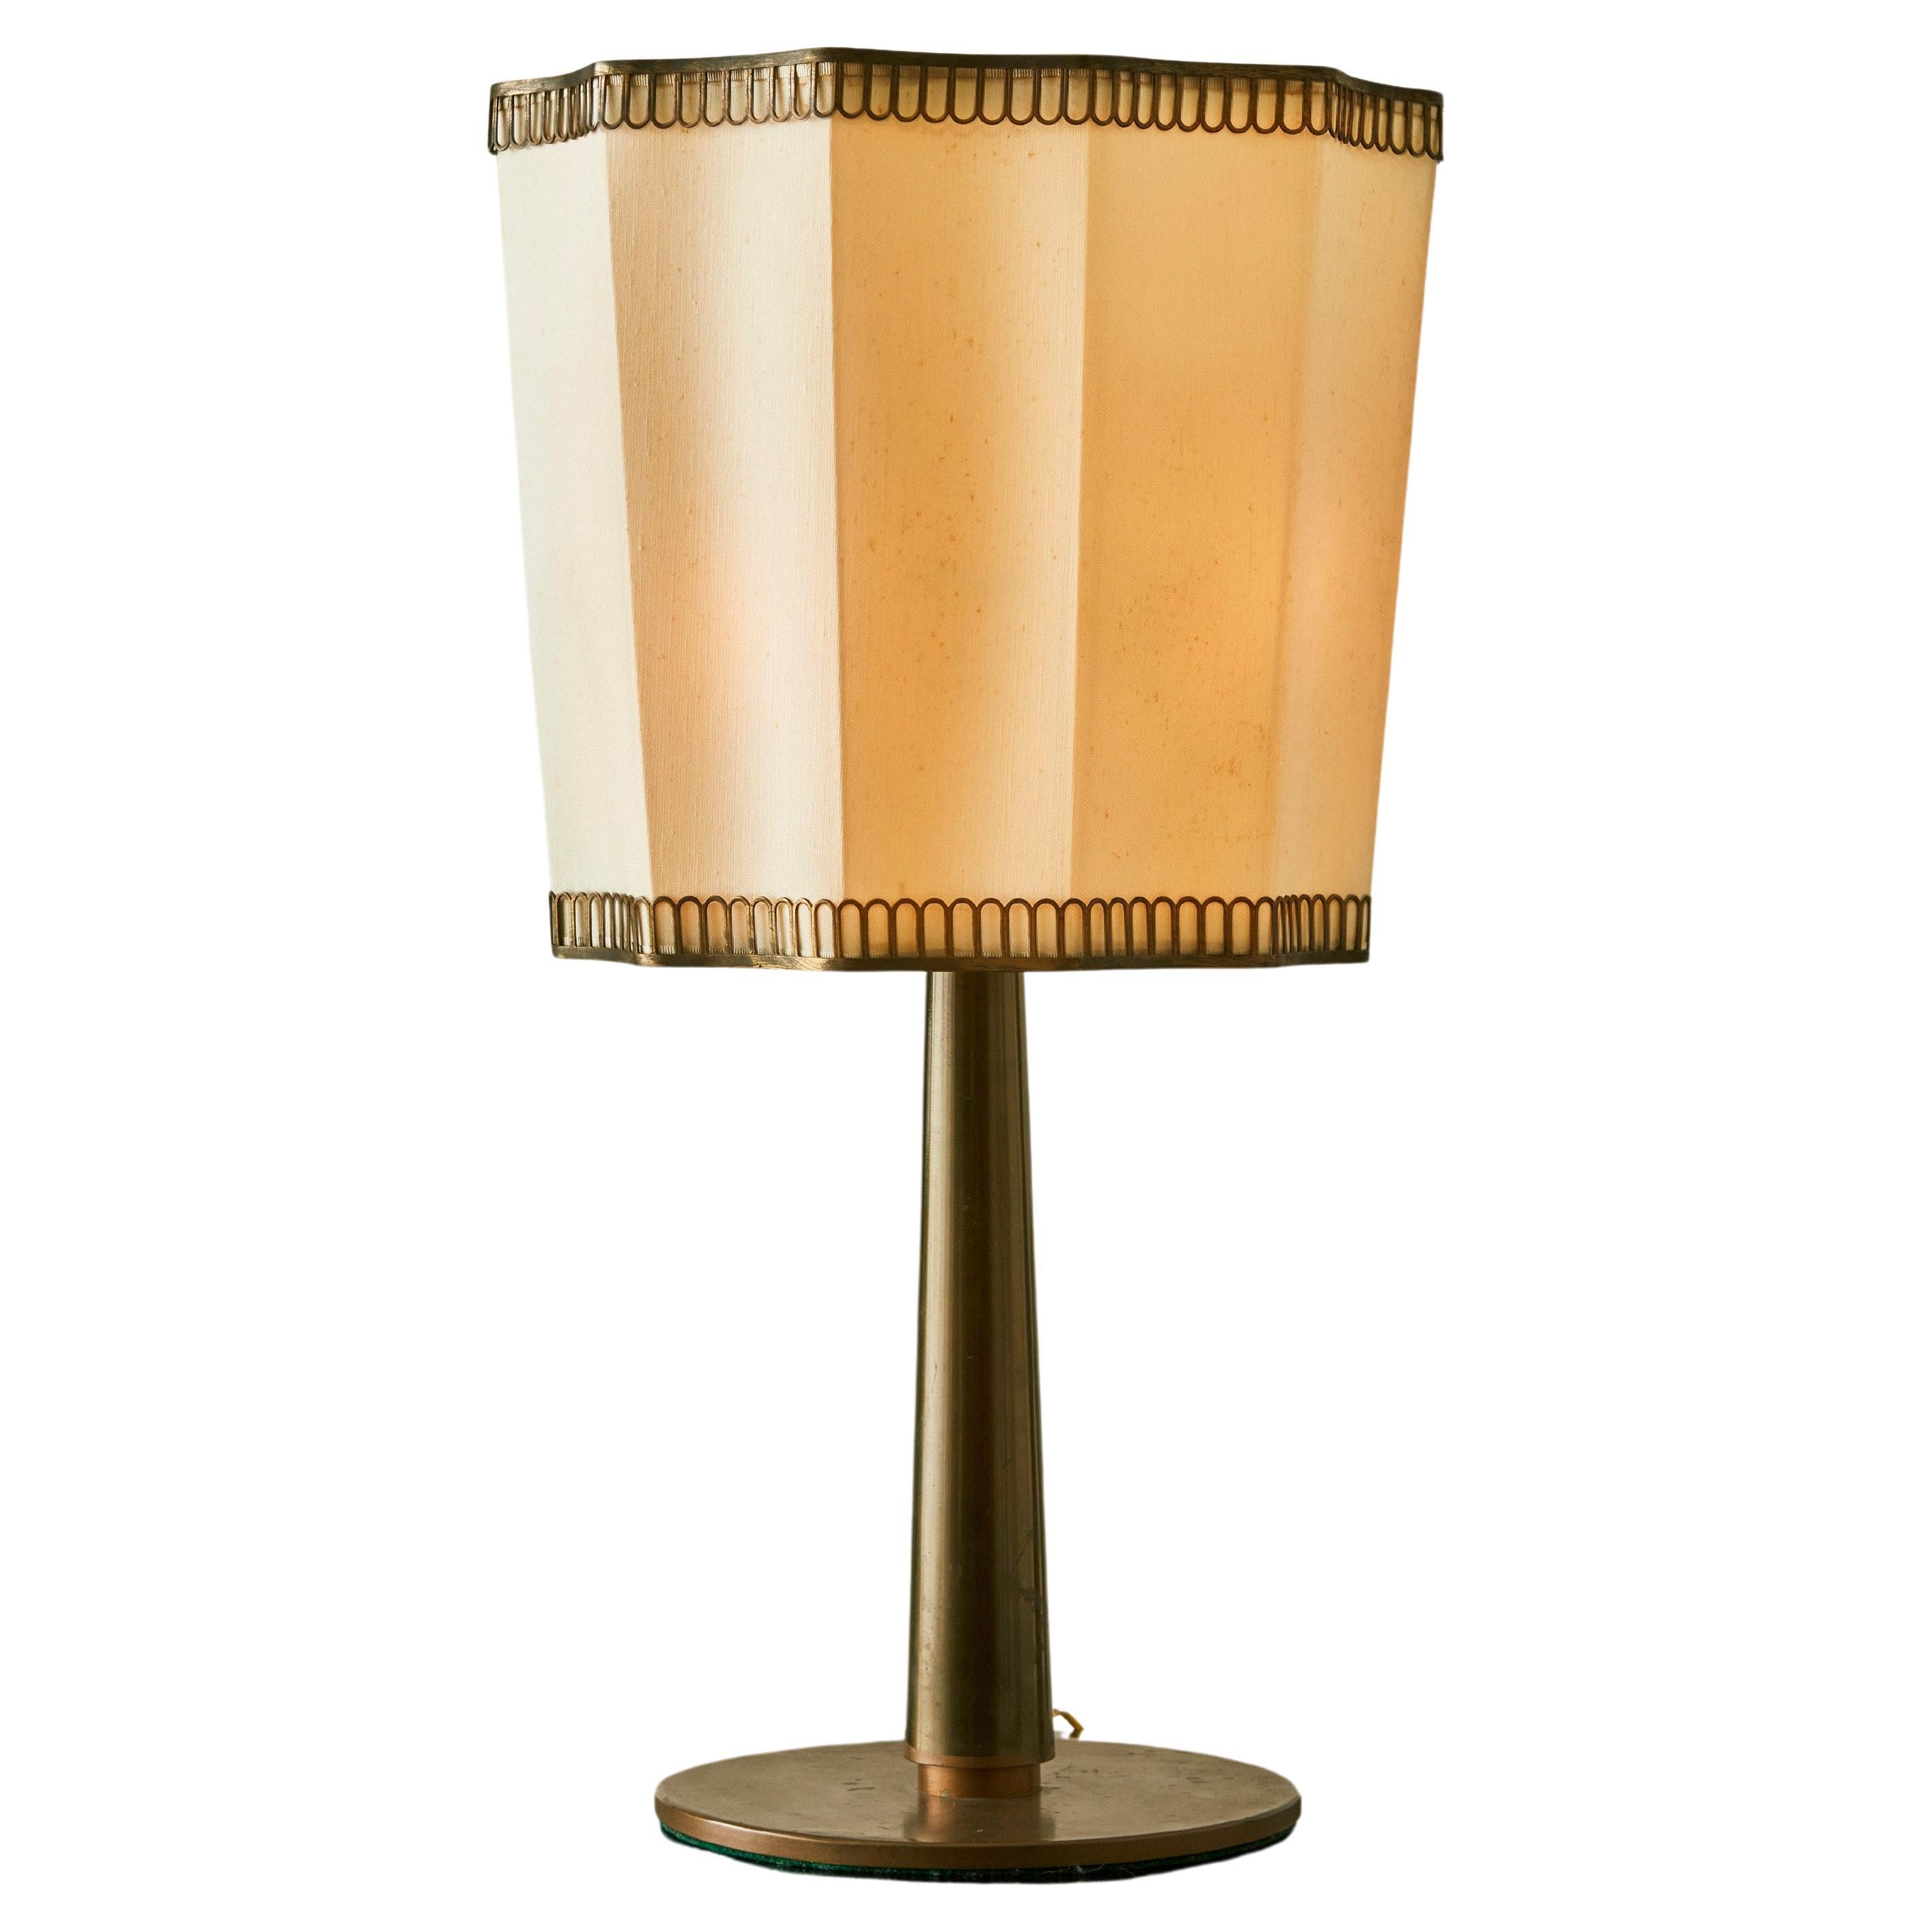 Italian Art Deco Table Lamp